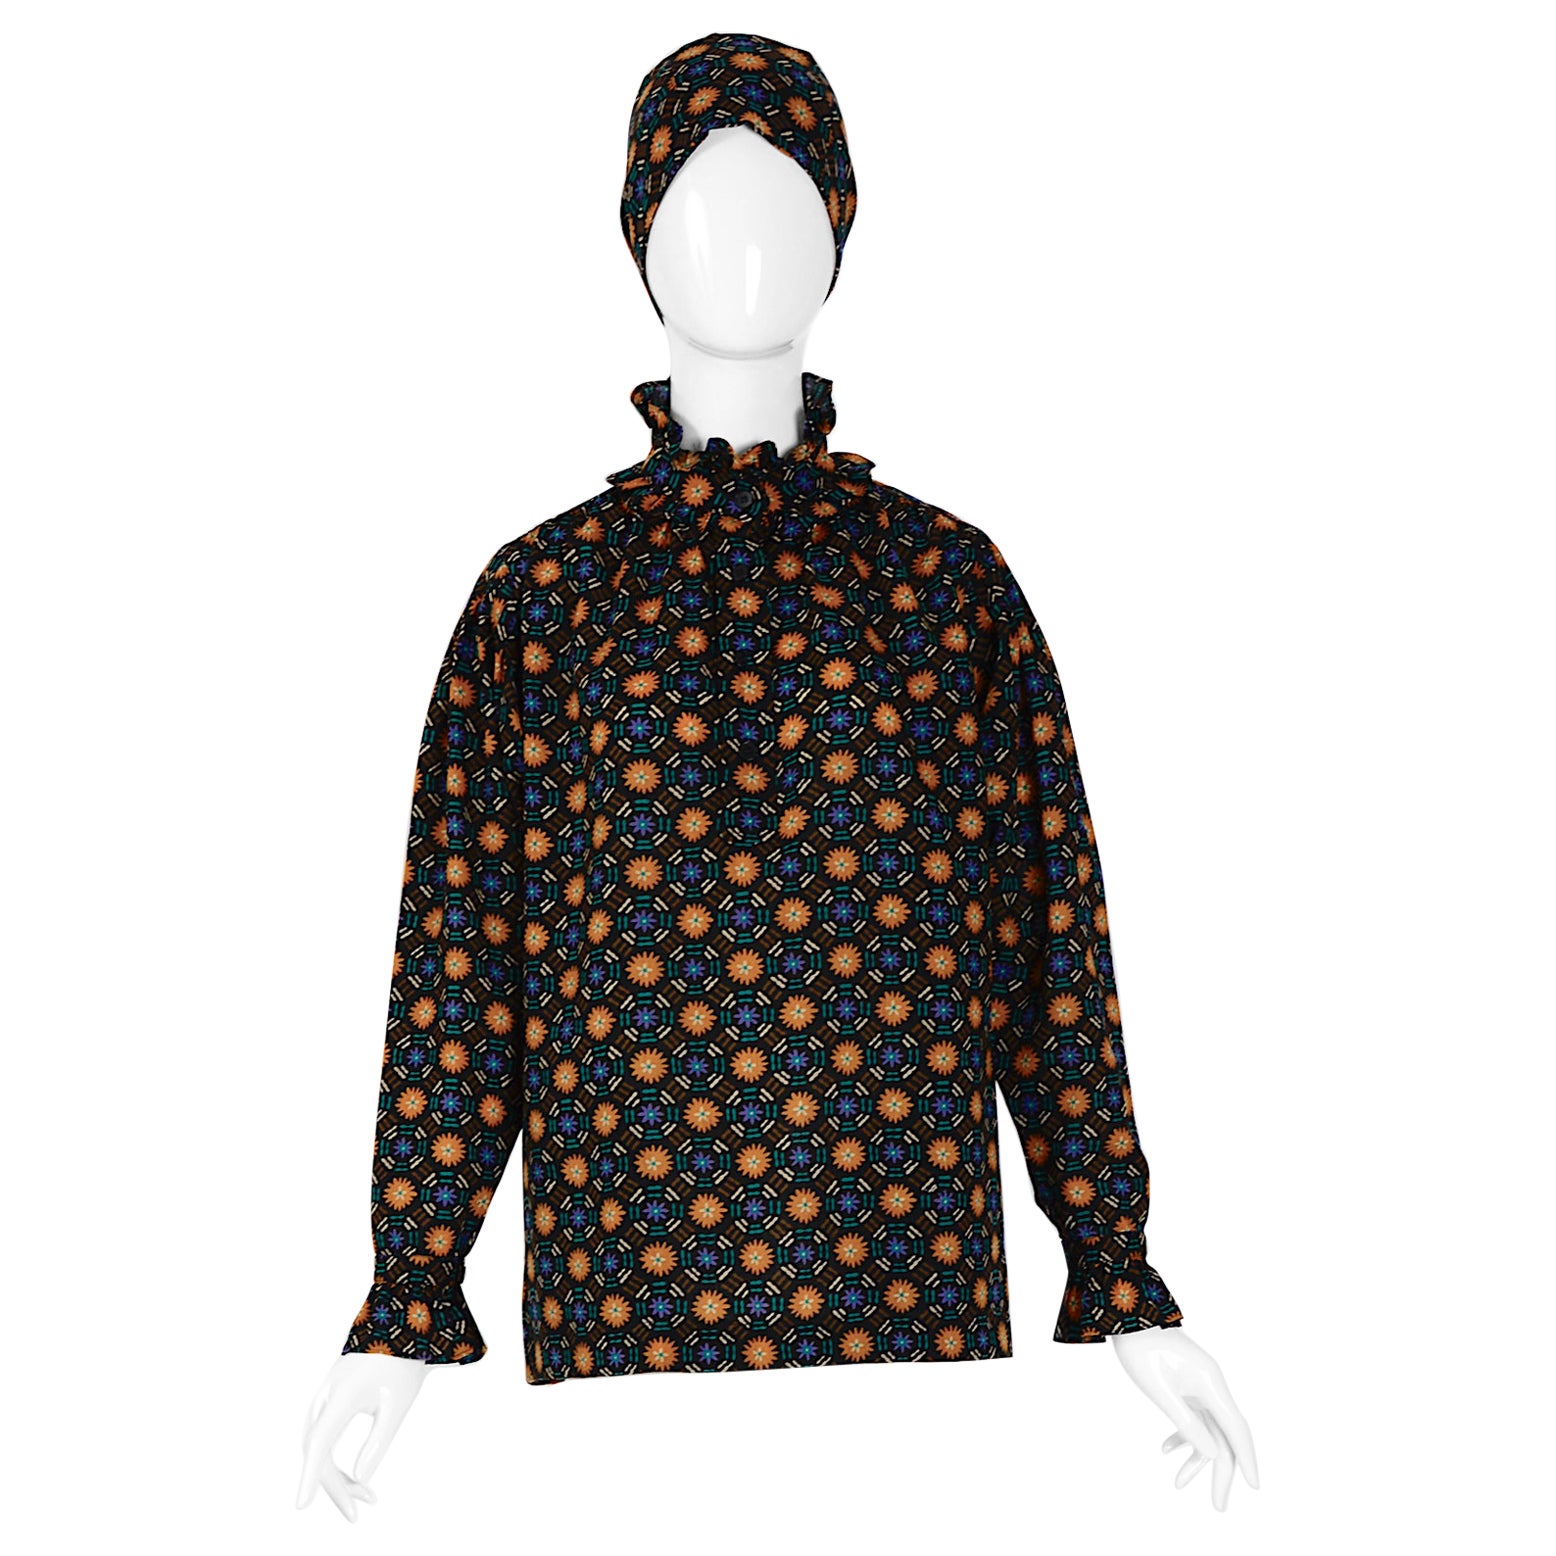 Yves Saint Laurent "rive gauche" flower print 70s vintage blouse & scarf set For Sale